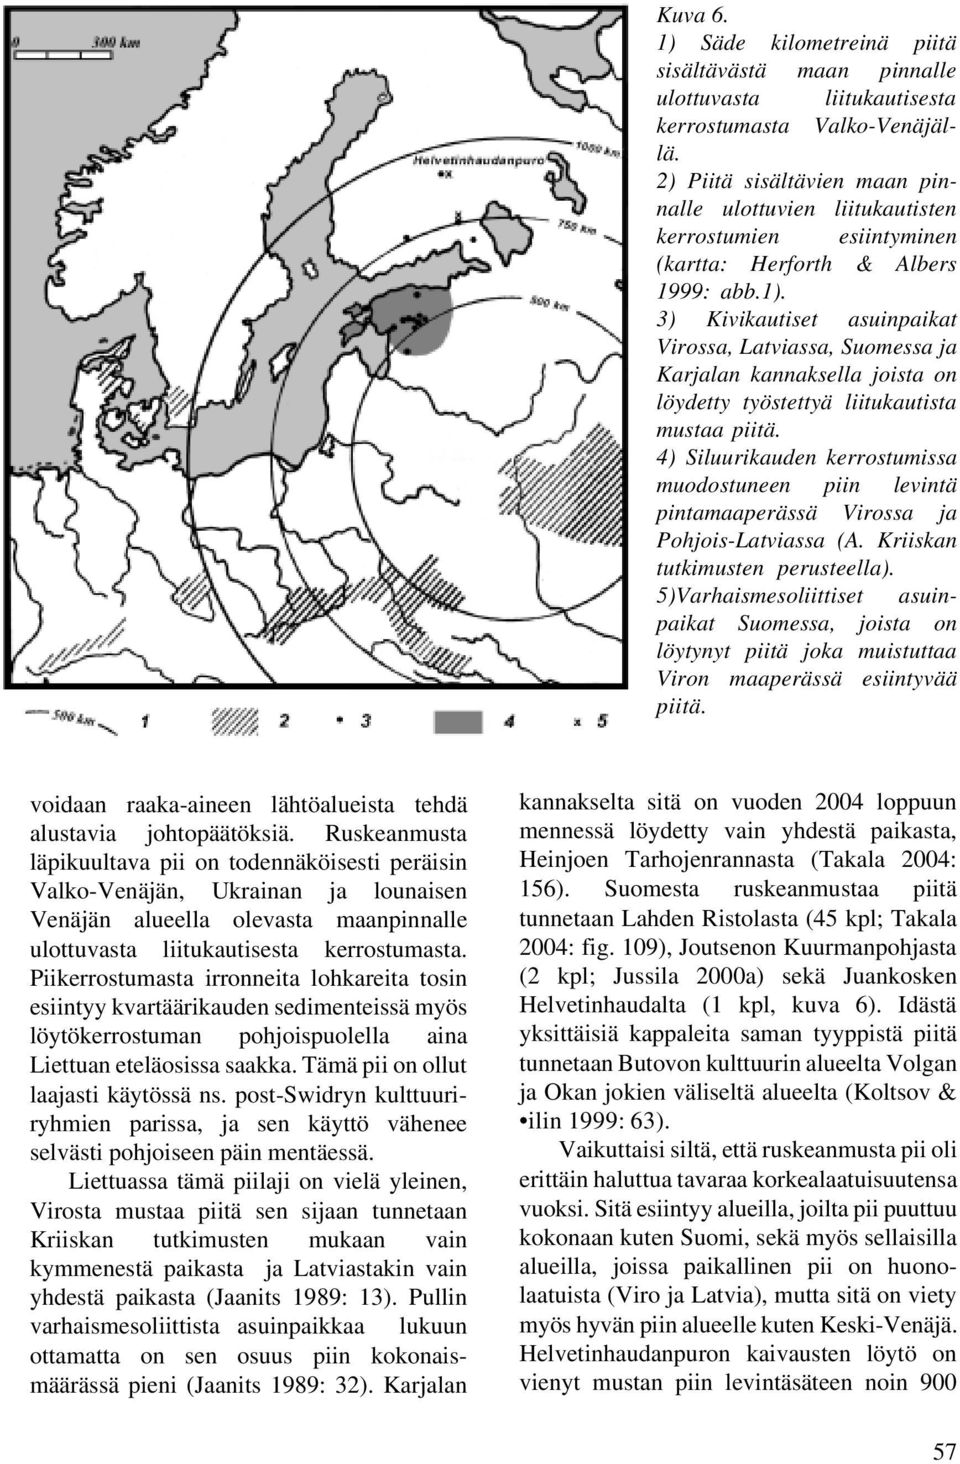 3) Kivikautiset asuinpaikat Virossa, Latviassa, Suomessa ja Karjalan kannaksella joista on löydetty työstettyä liitukautista mustaa piitä.